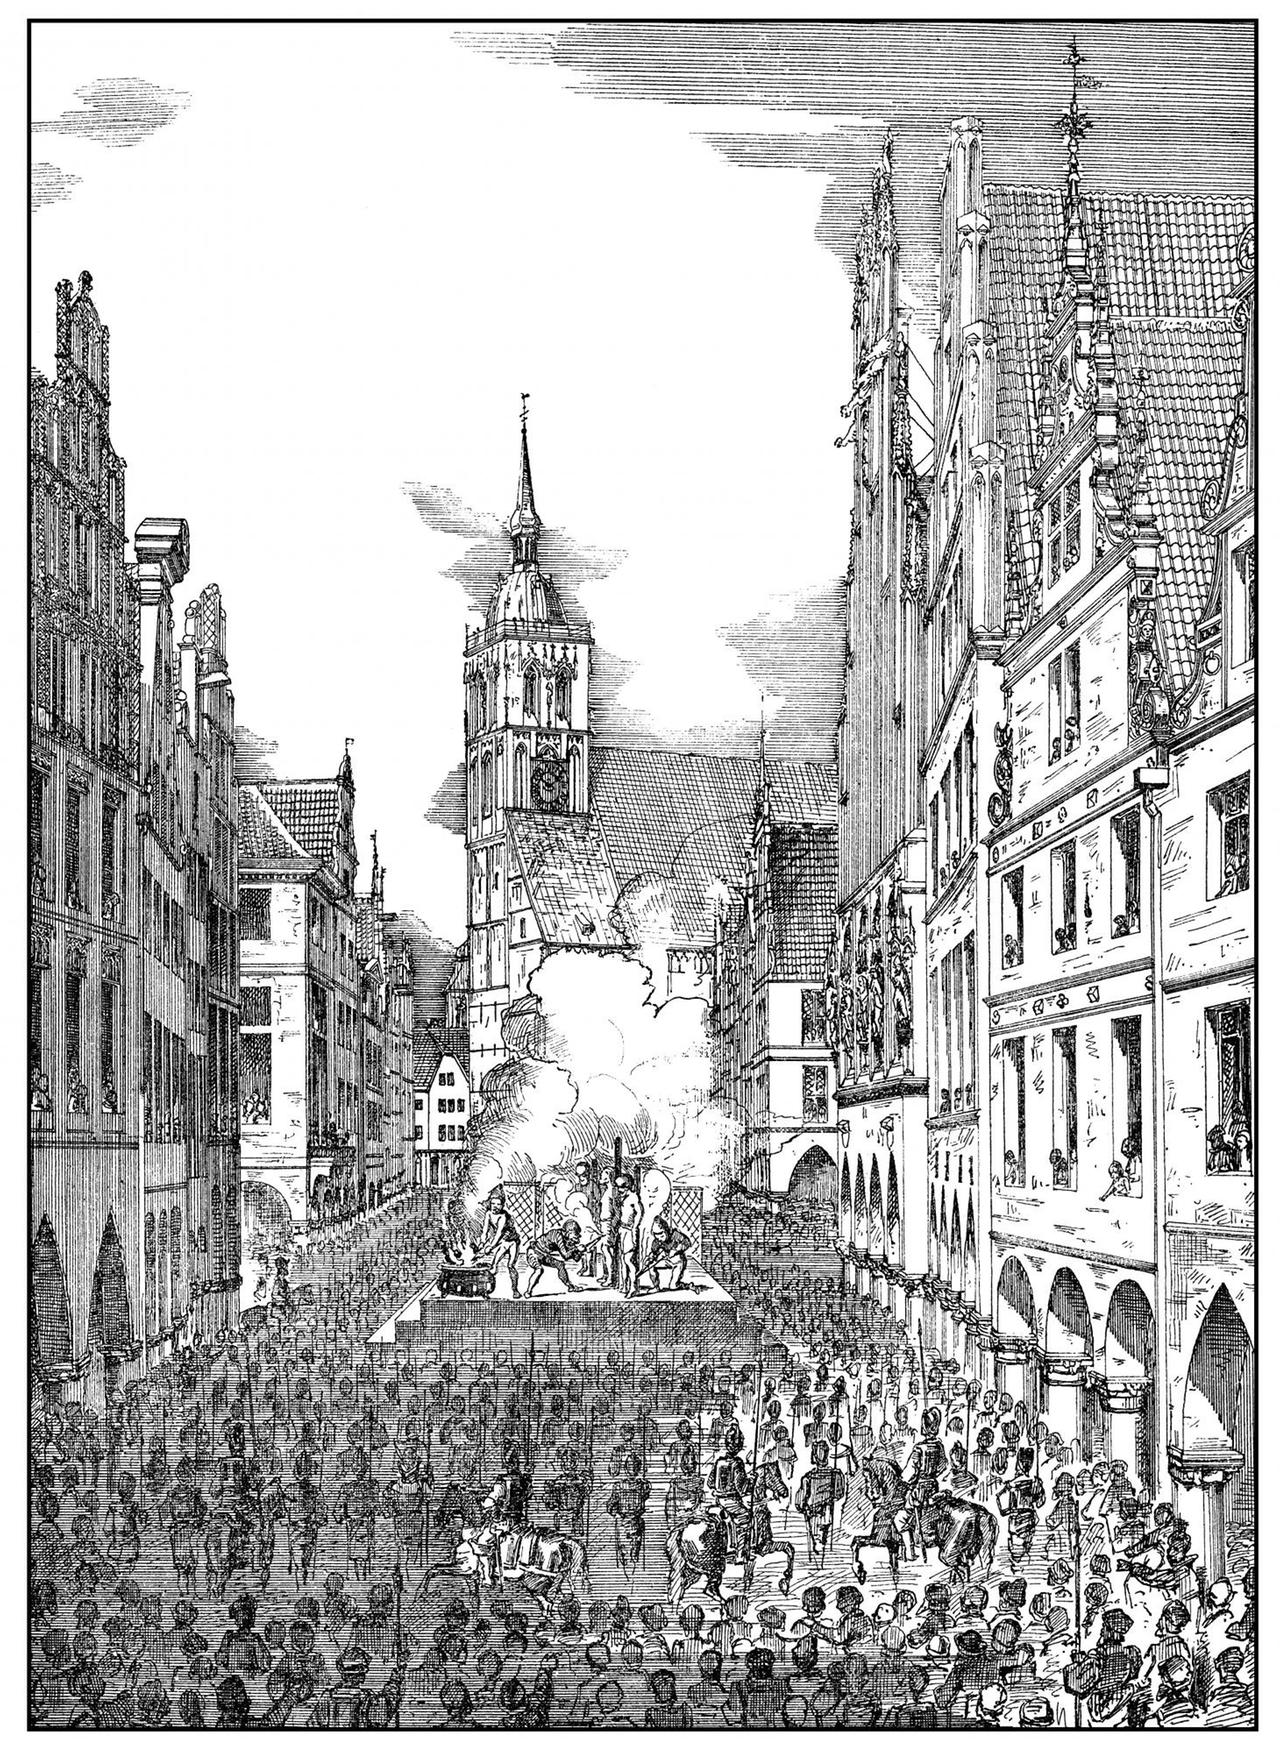 Historische Zeichnung aus dem 19. Jahrhundert zur Hinrichtung der Täufer Jan van Leiden, Bernd Krechting und Bernd Knipperdolling auf dem Prinzipalmarkt in Münster im Jahr 1536 